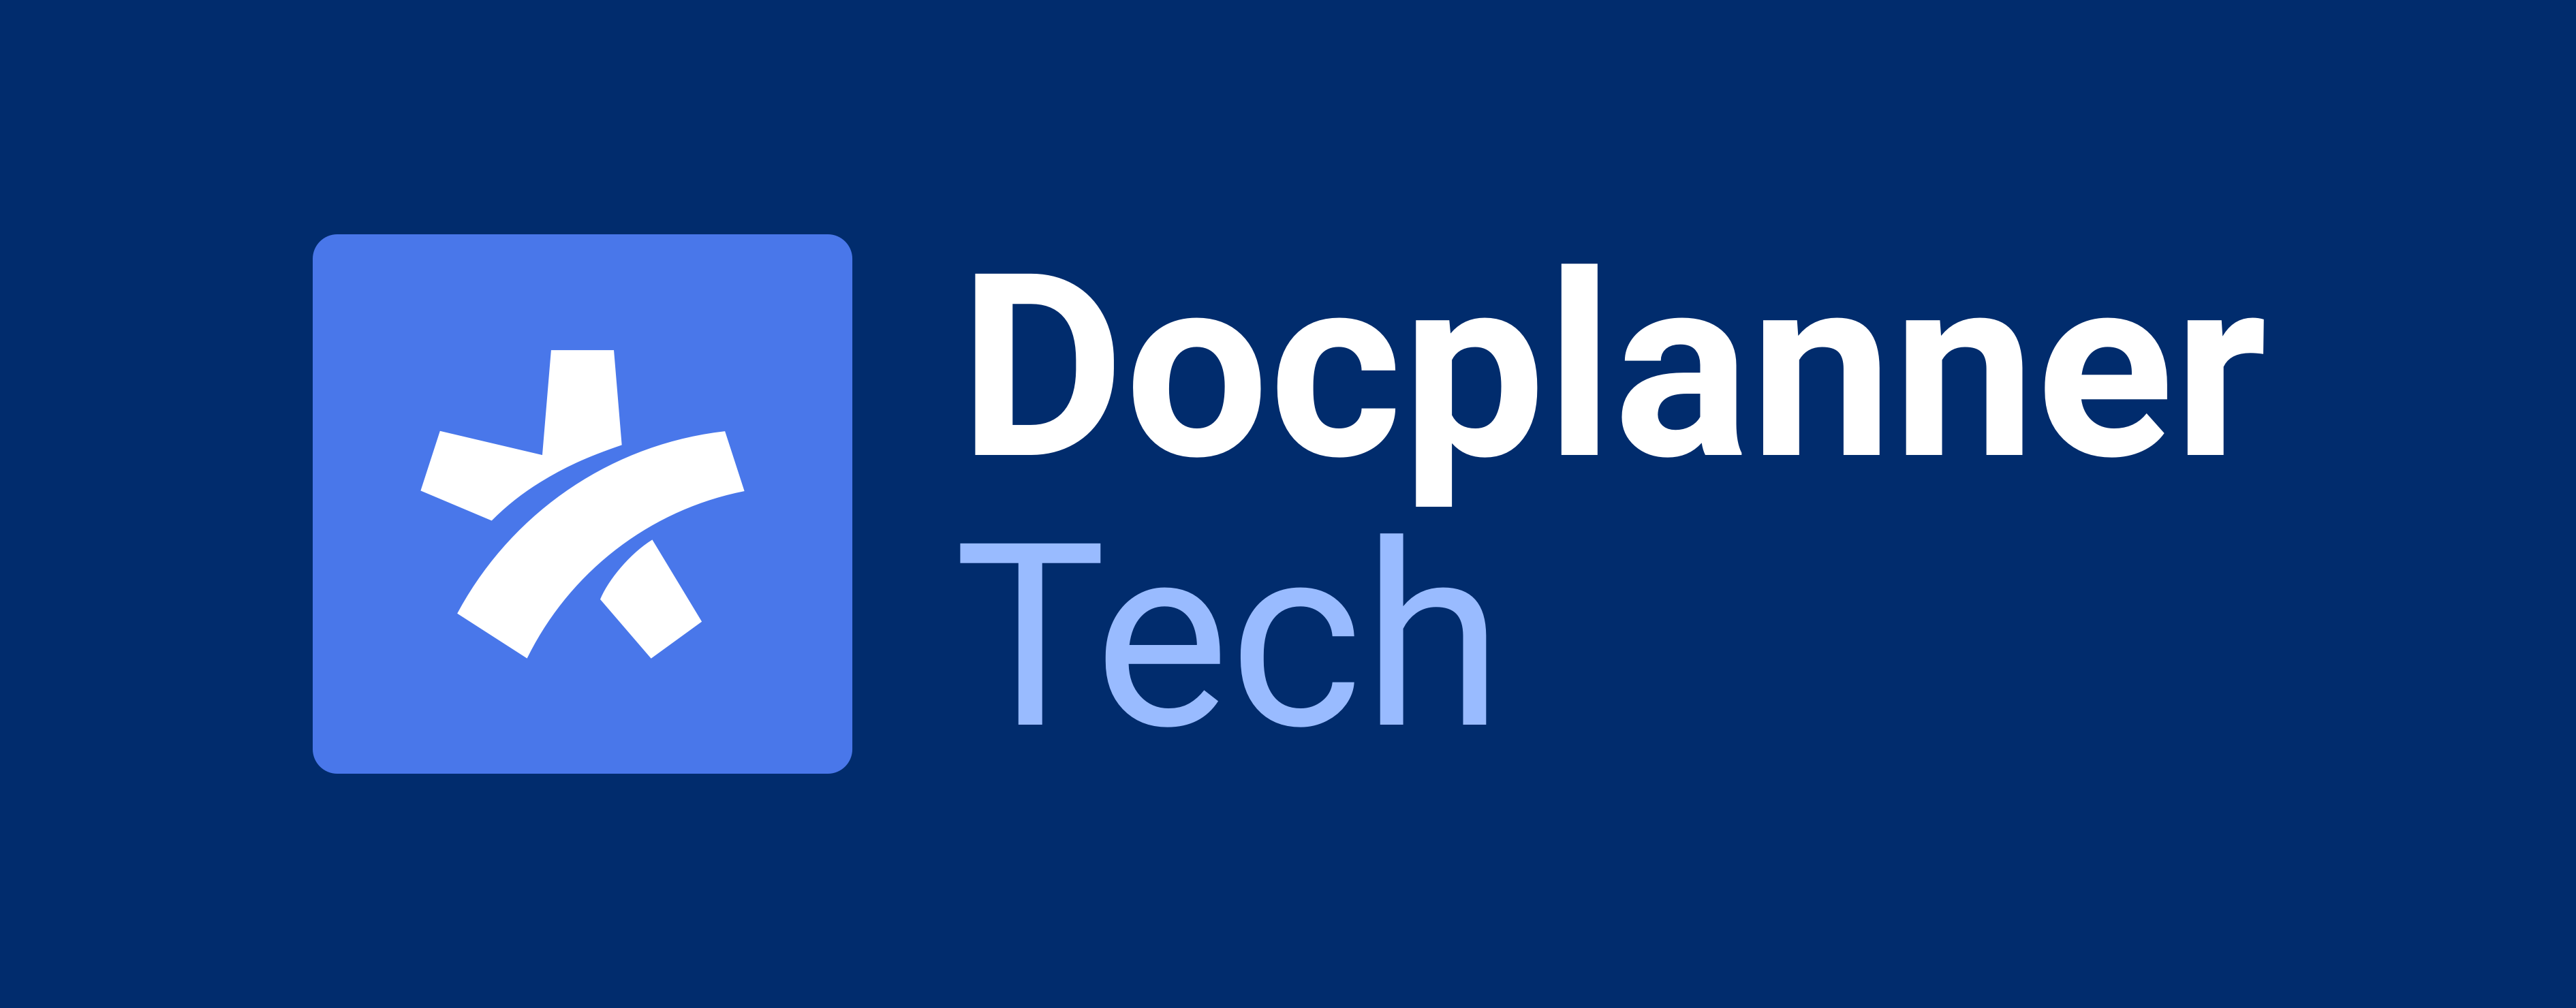 Logo DocplannerTech